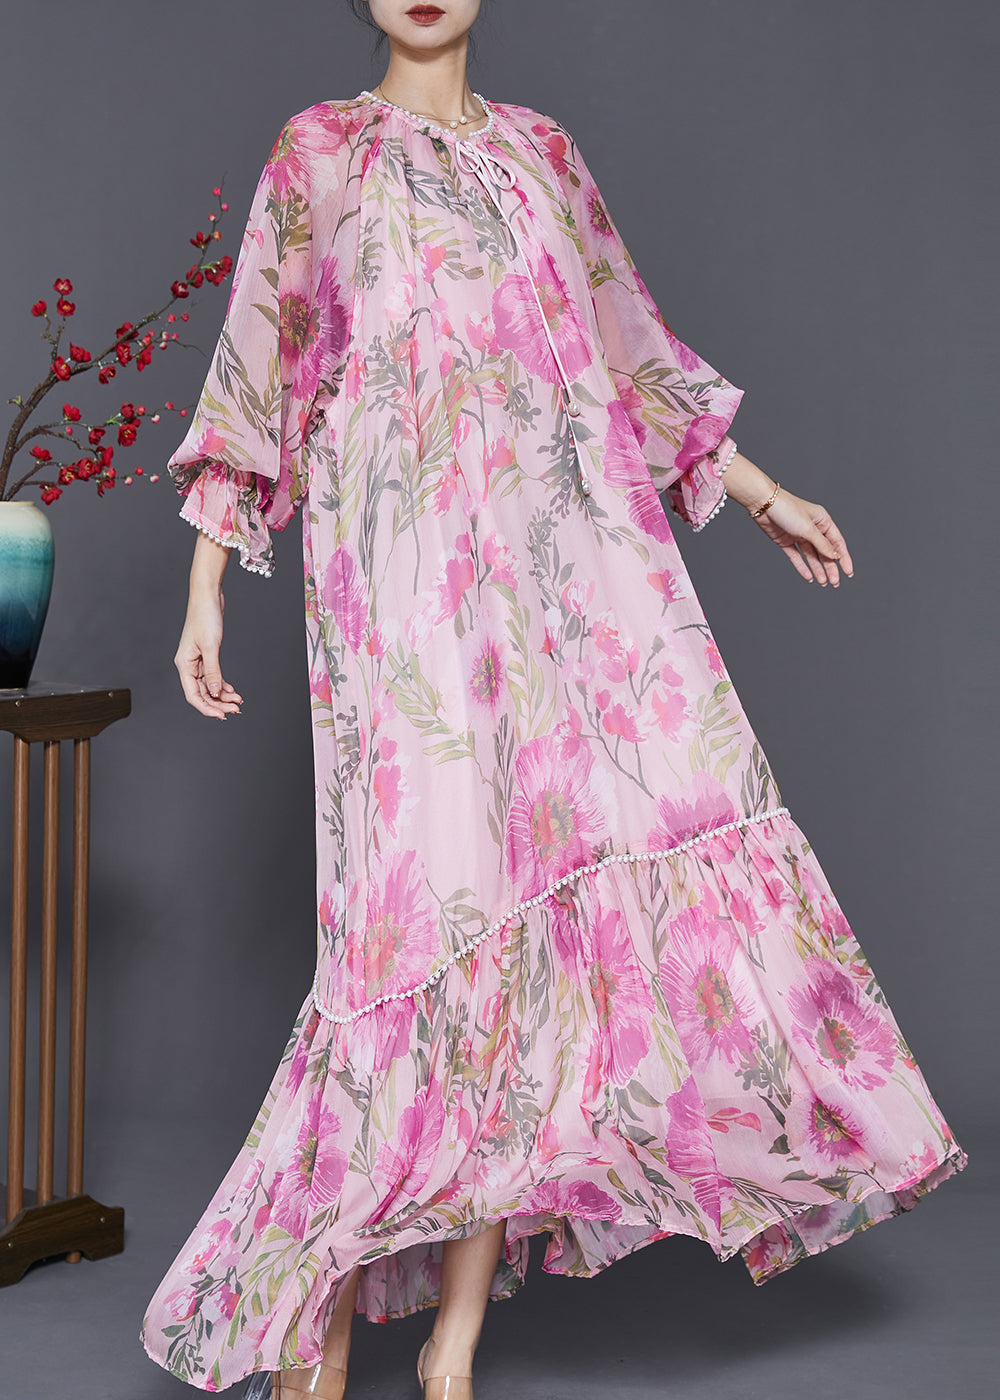 Stylish Pink Oversized Print Chiffon Maxi Dresses Spring